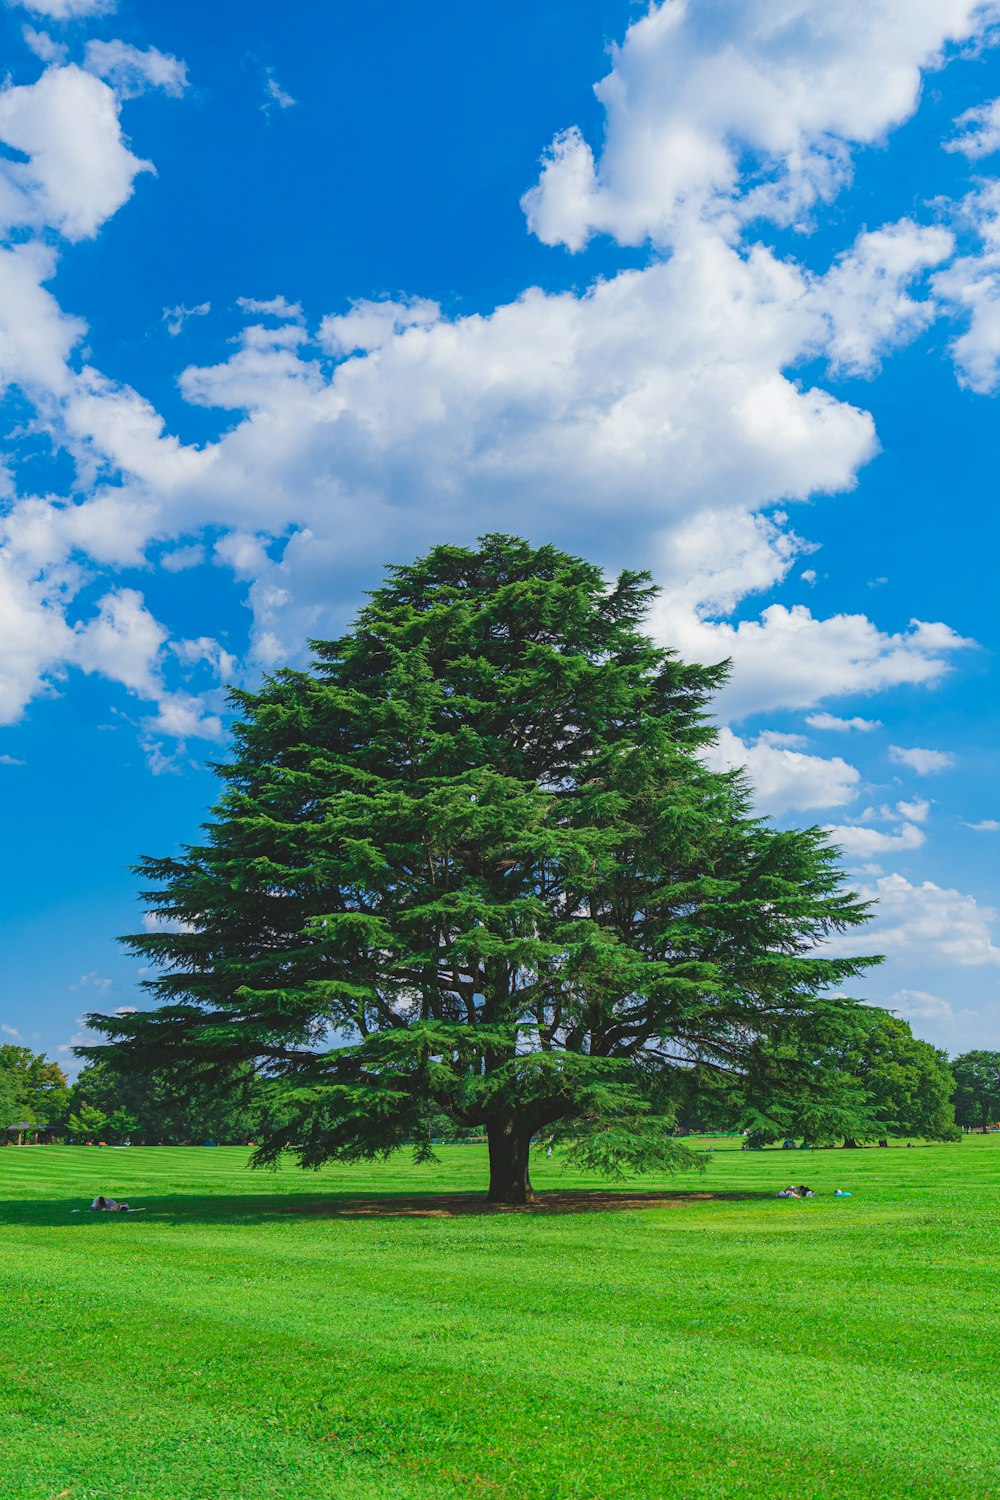 albero verde su campo di erba verde sotto cielo nuvoloso blu e bianco durante il giorno